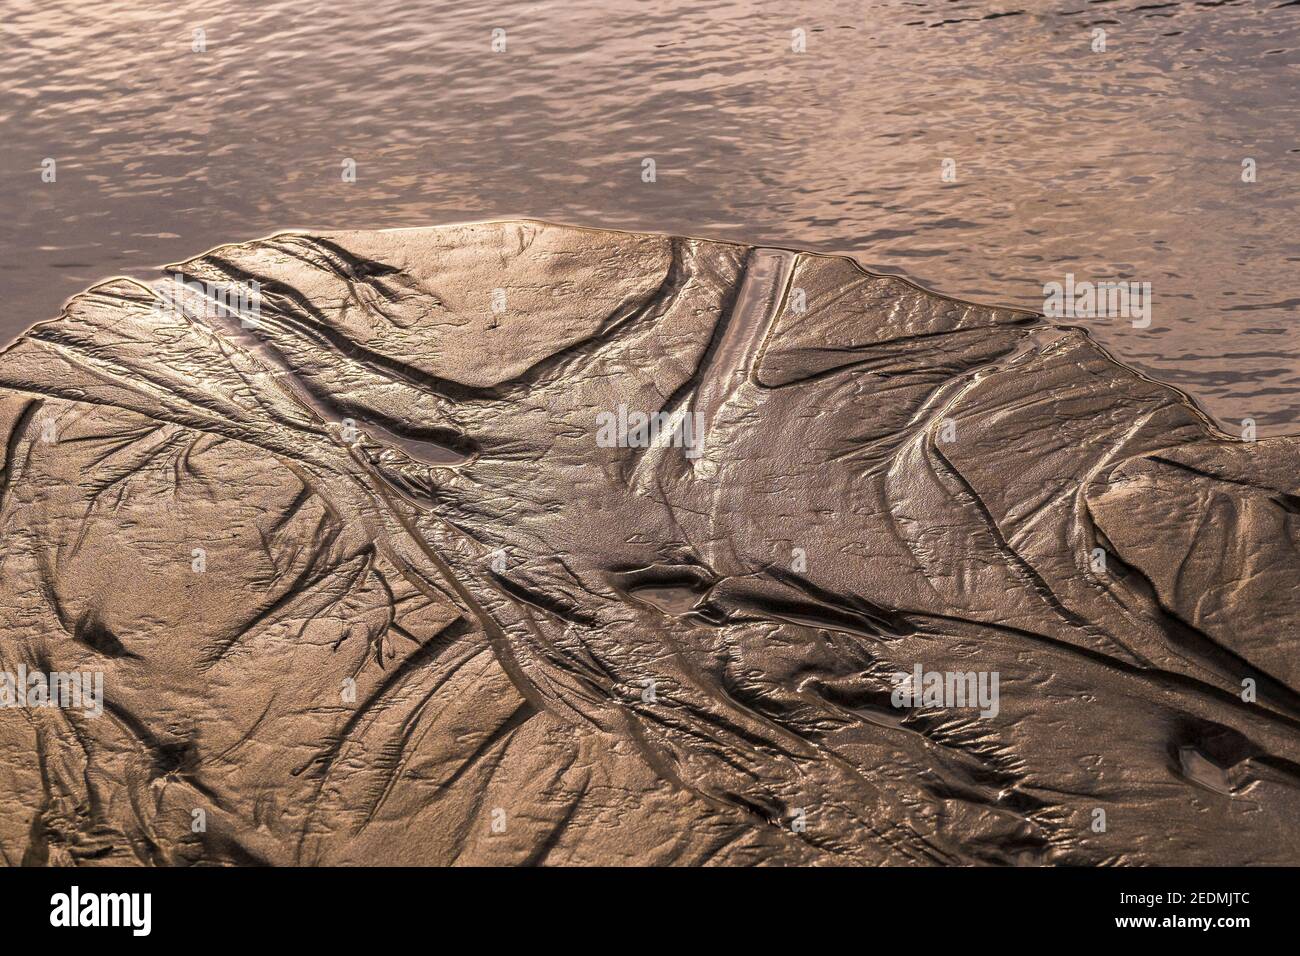 Wasserflecken, die durch eine zurücktretende Flut im Sand hinterlassen werden. Stockfoto